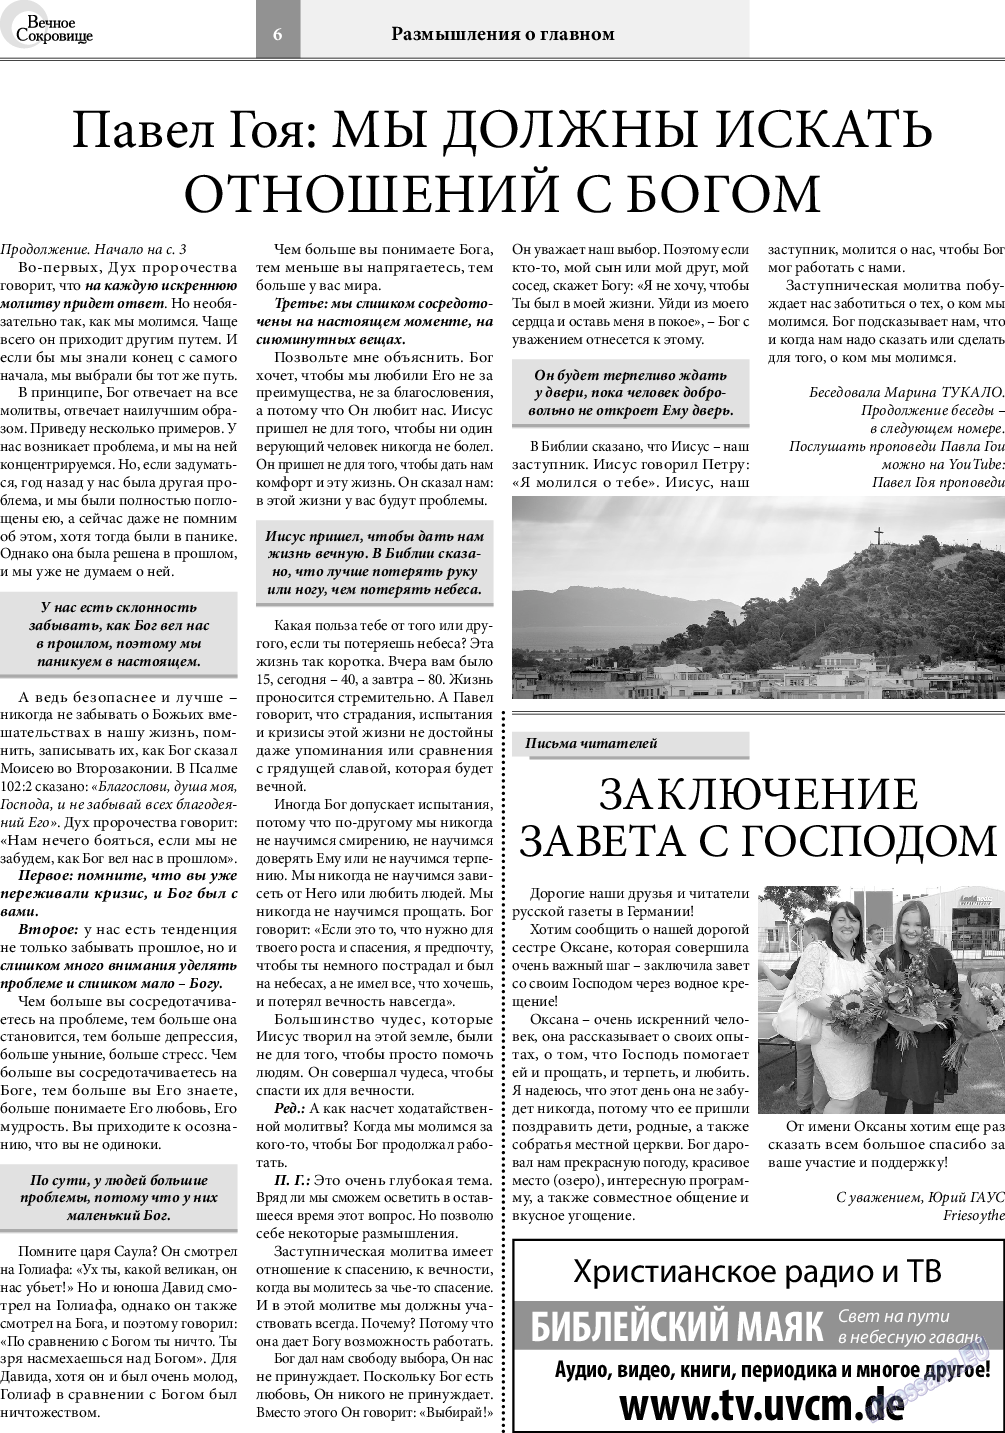 Вечное сокровище, газета. 2021 №4 стр.6